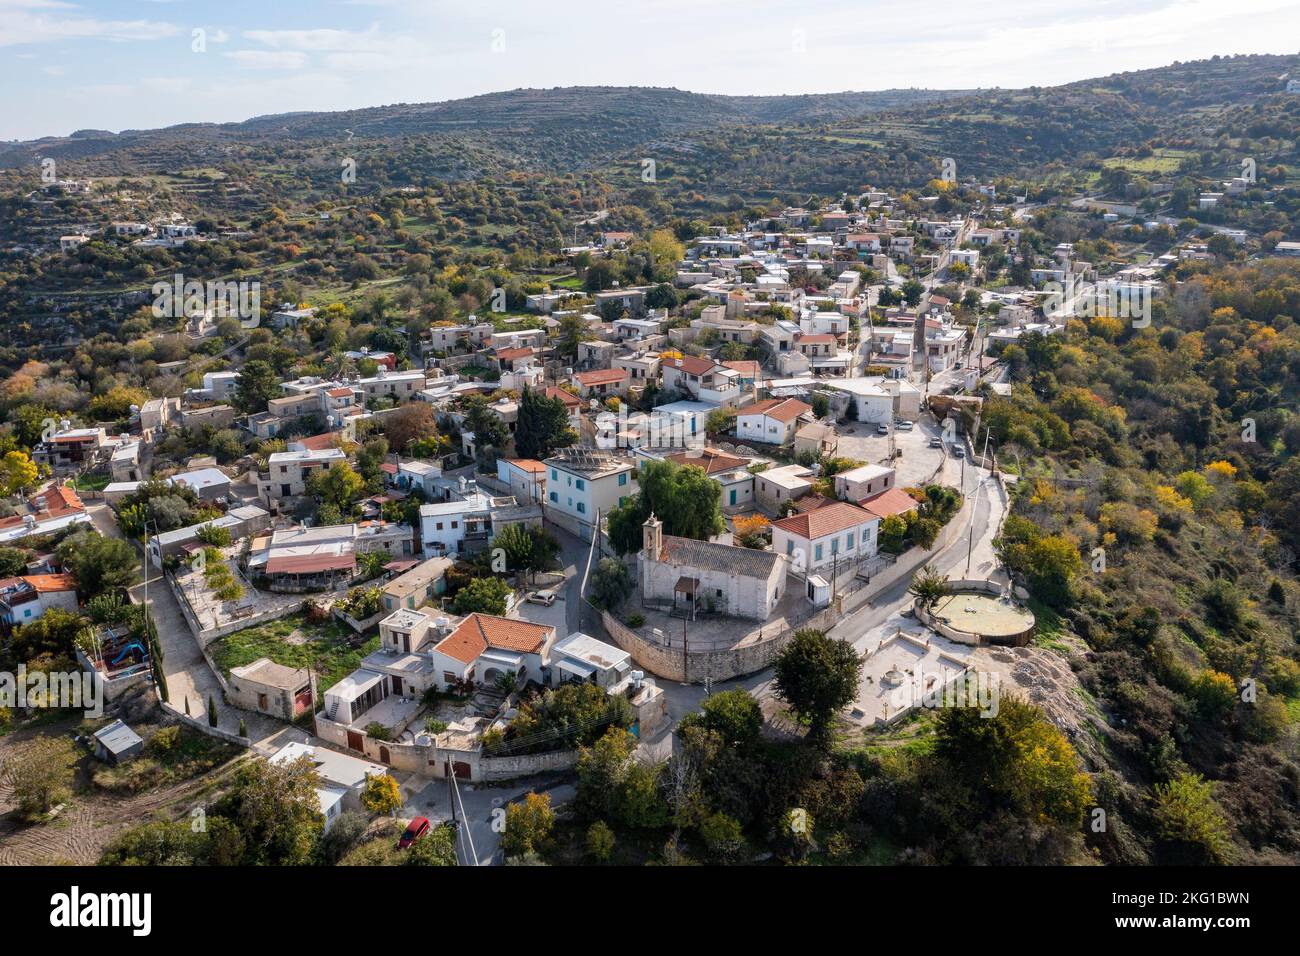 Aerial view of Kritou Terra village, Paphos Region, Cyprus Stock Photo